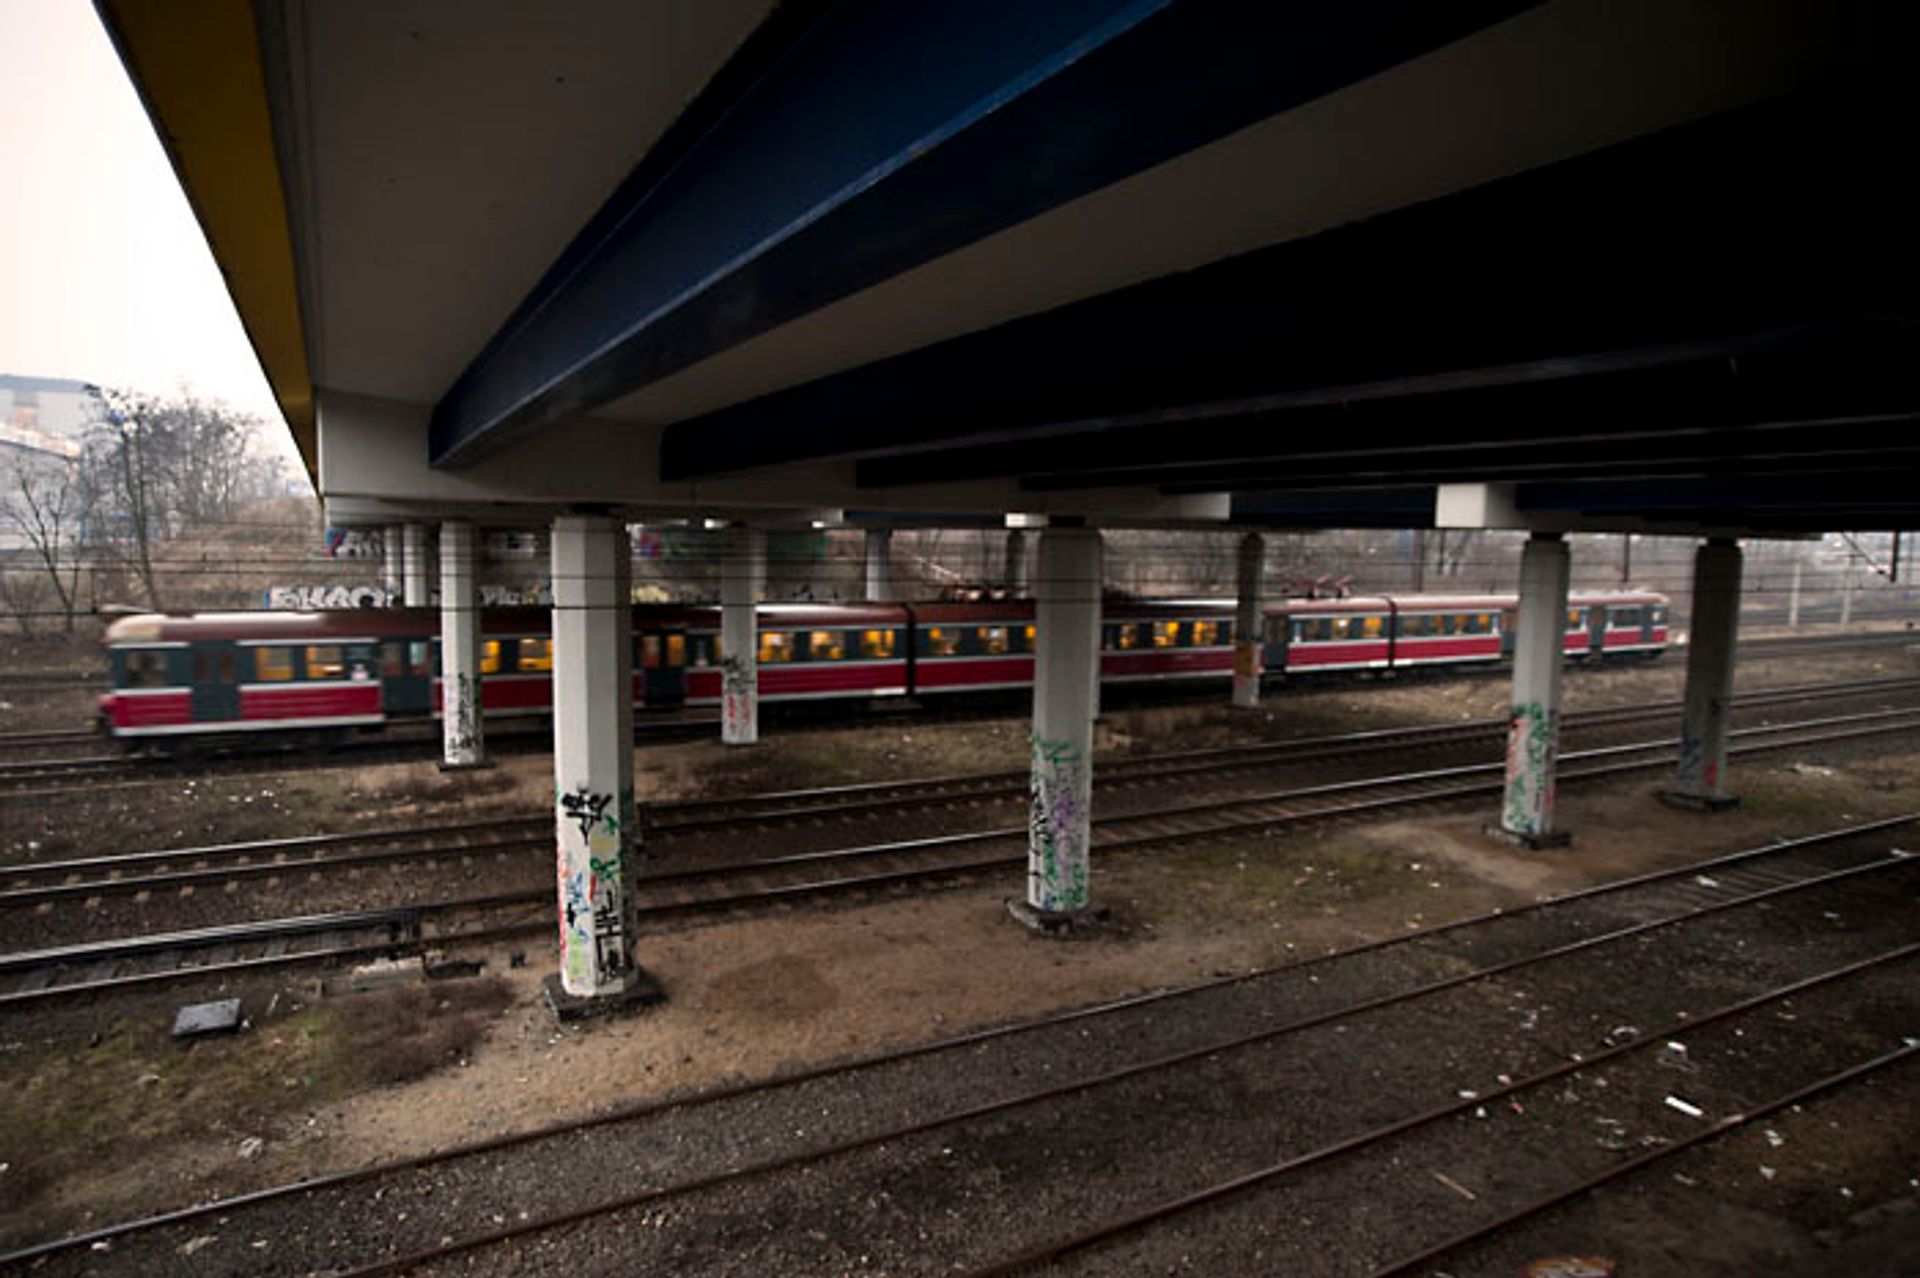  Euro 2012 we Wrocławiu: kibiców dowiozą dodatkowe pociągi